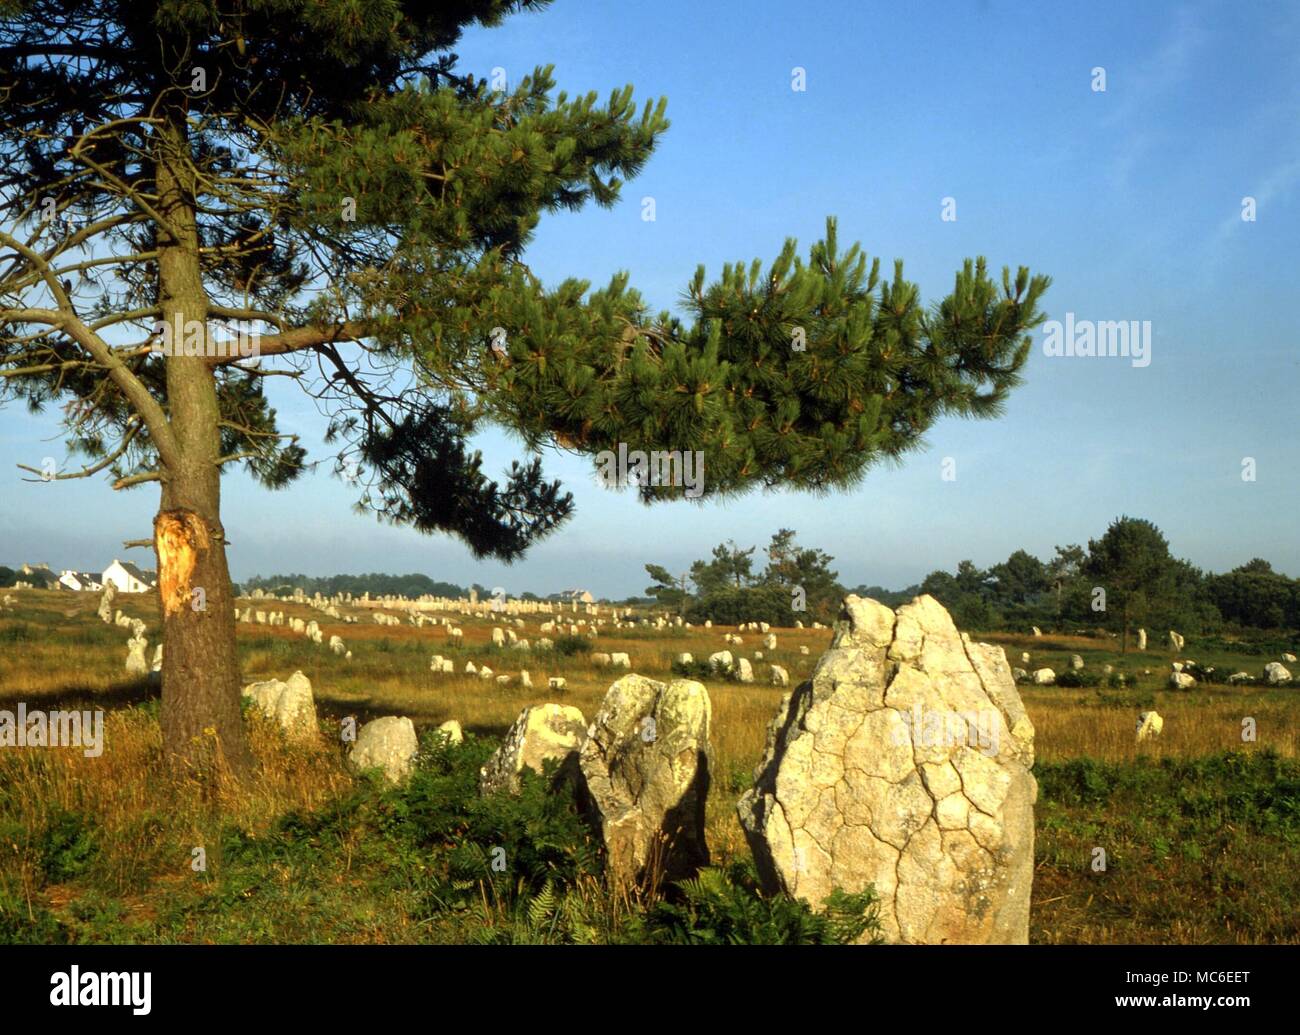 STONES - Uno de los tres principales avenidas de piedra prehistóricos de Carnac, en Francia. Se dice que originalmente había más de 7.000 menhires planteadas en este notable sitio Foto de stock